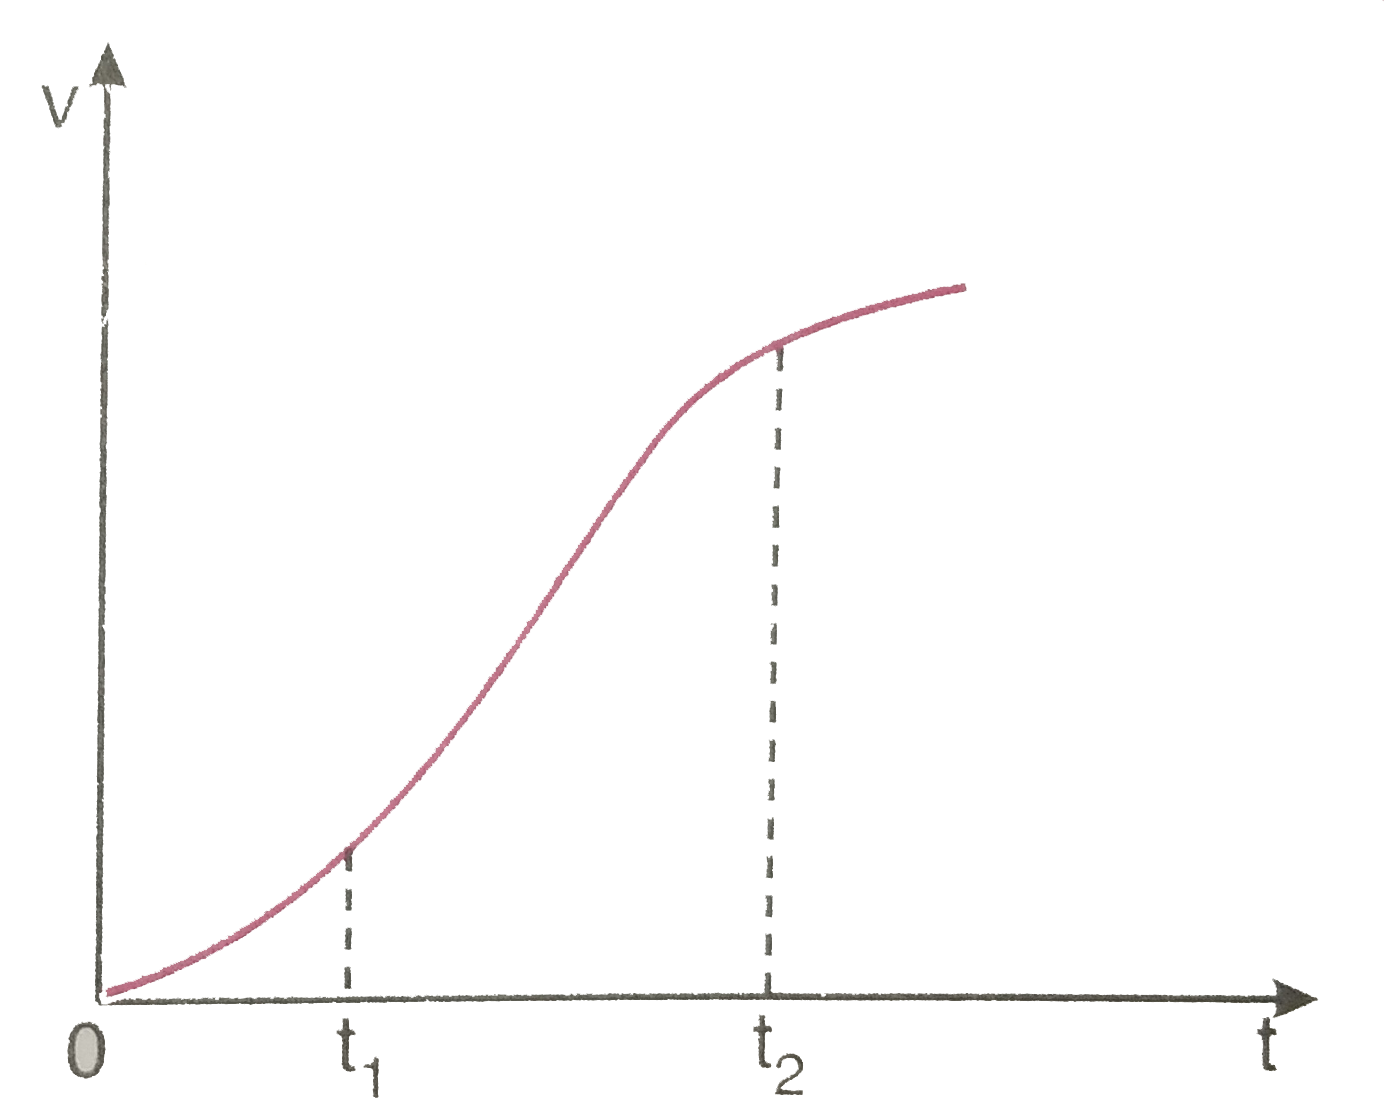 एक विमीय गति में किसी का वेग - समय ग्राफ चित्र 3.62 में दिखाया गया है नीचे दिए सूत्रों में t(1) से t(2) तक के समय अंतराल की अवधि में कण की गति का वर्णन करने के लिए कौन-से सूत्र सही है   x(t(2))=x(t(1))+v(